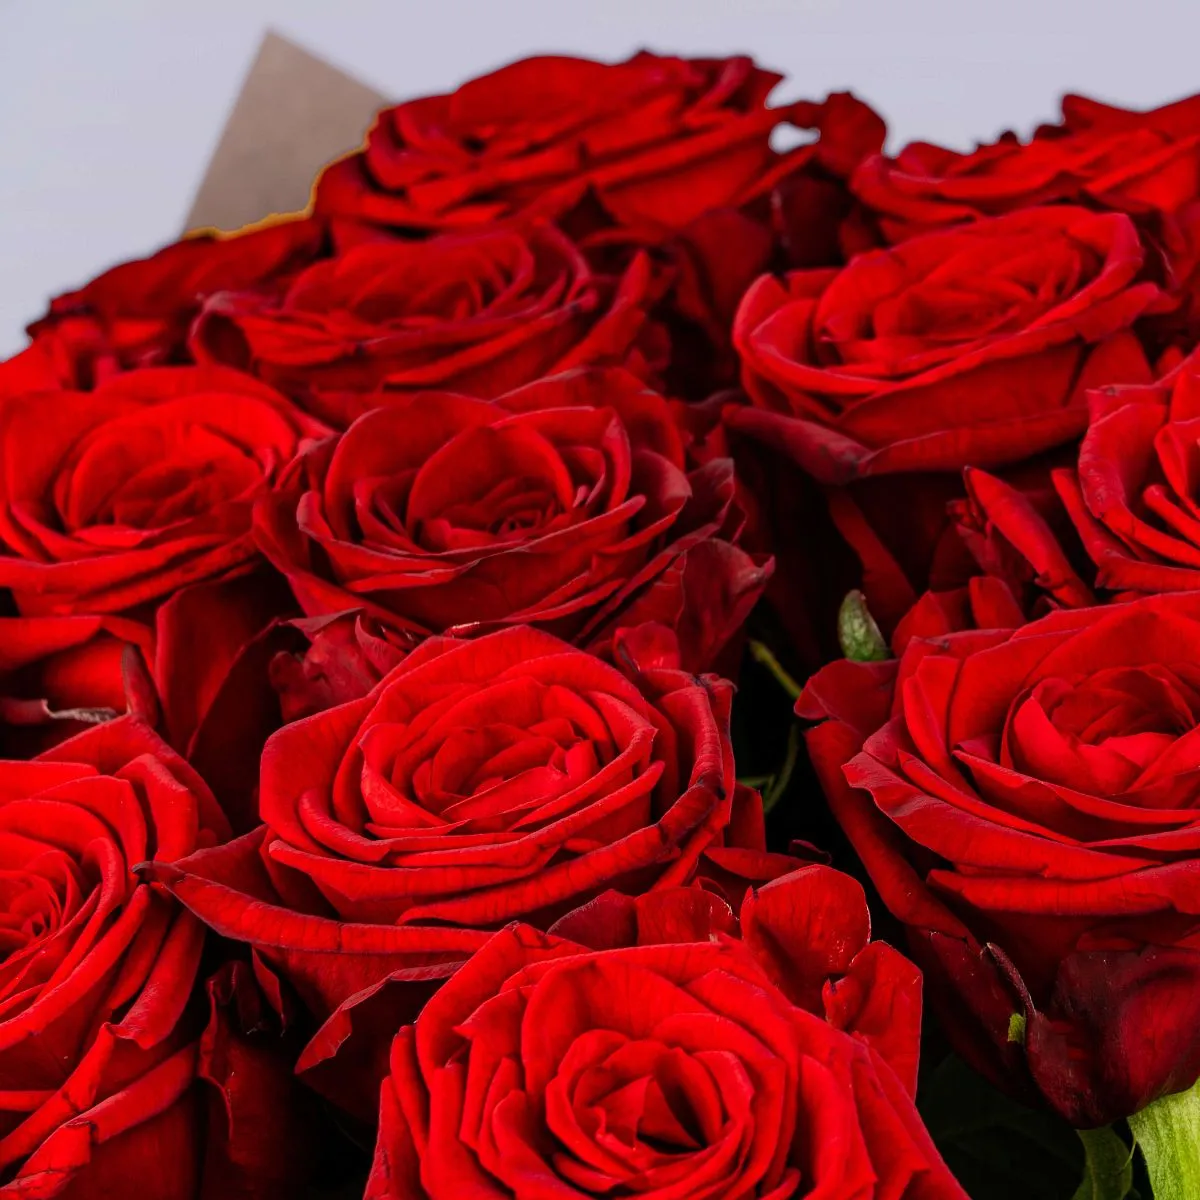 29 красных роз (70 см)